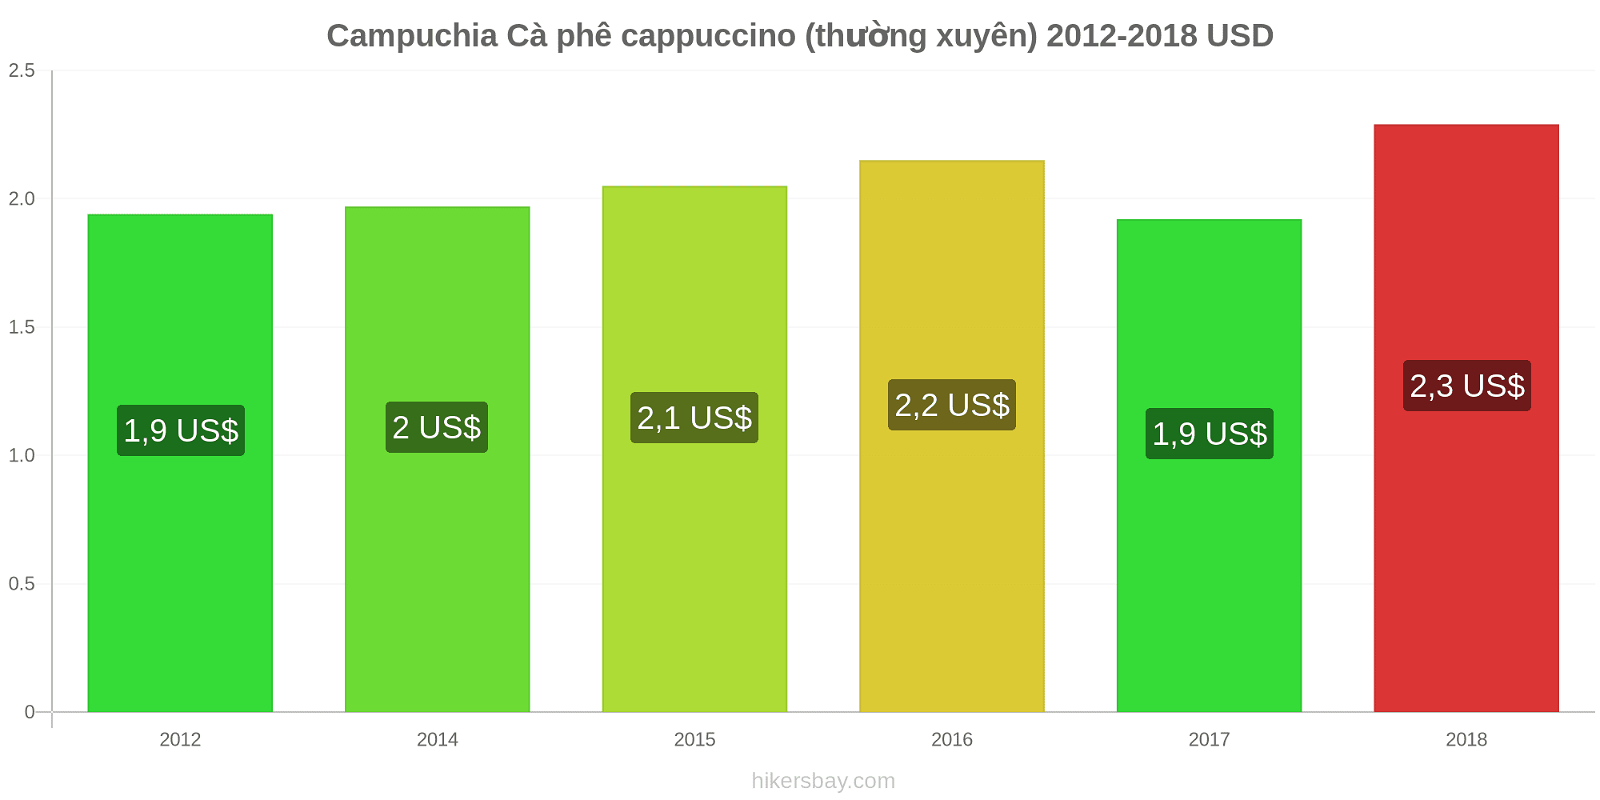 Campuchia thay đổi giá cả Cà phê cappuccino hikersbay.com